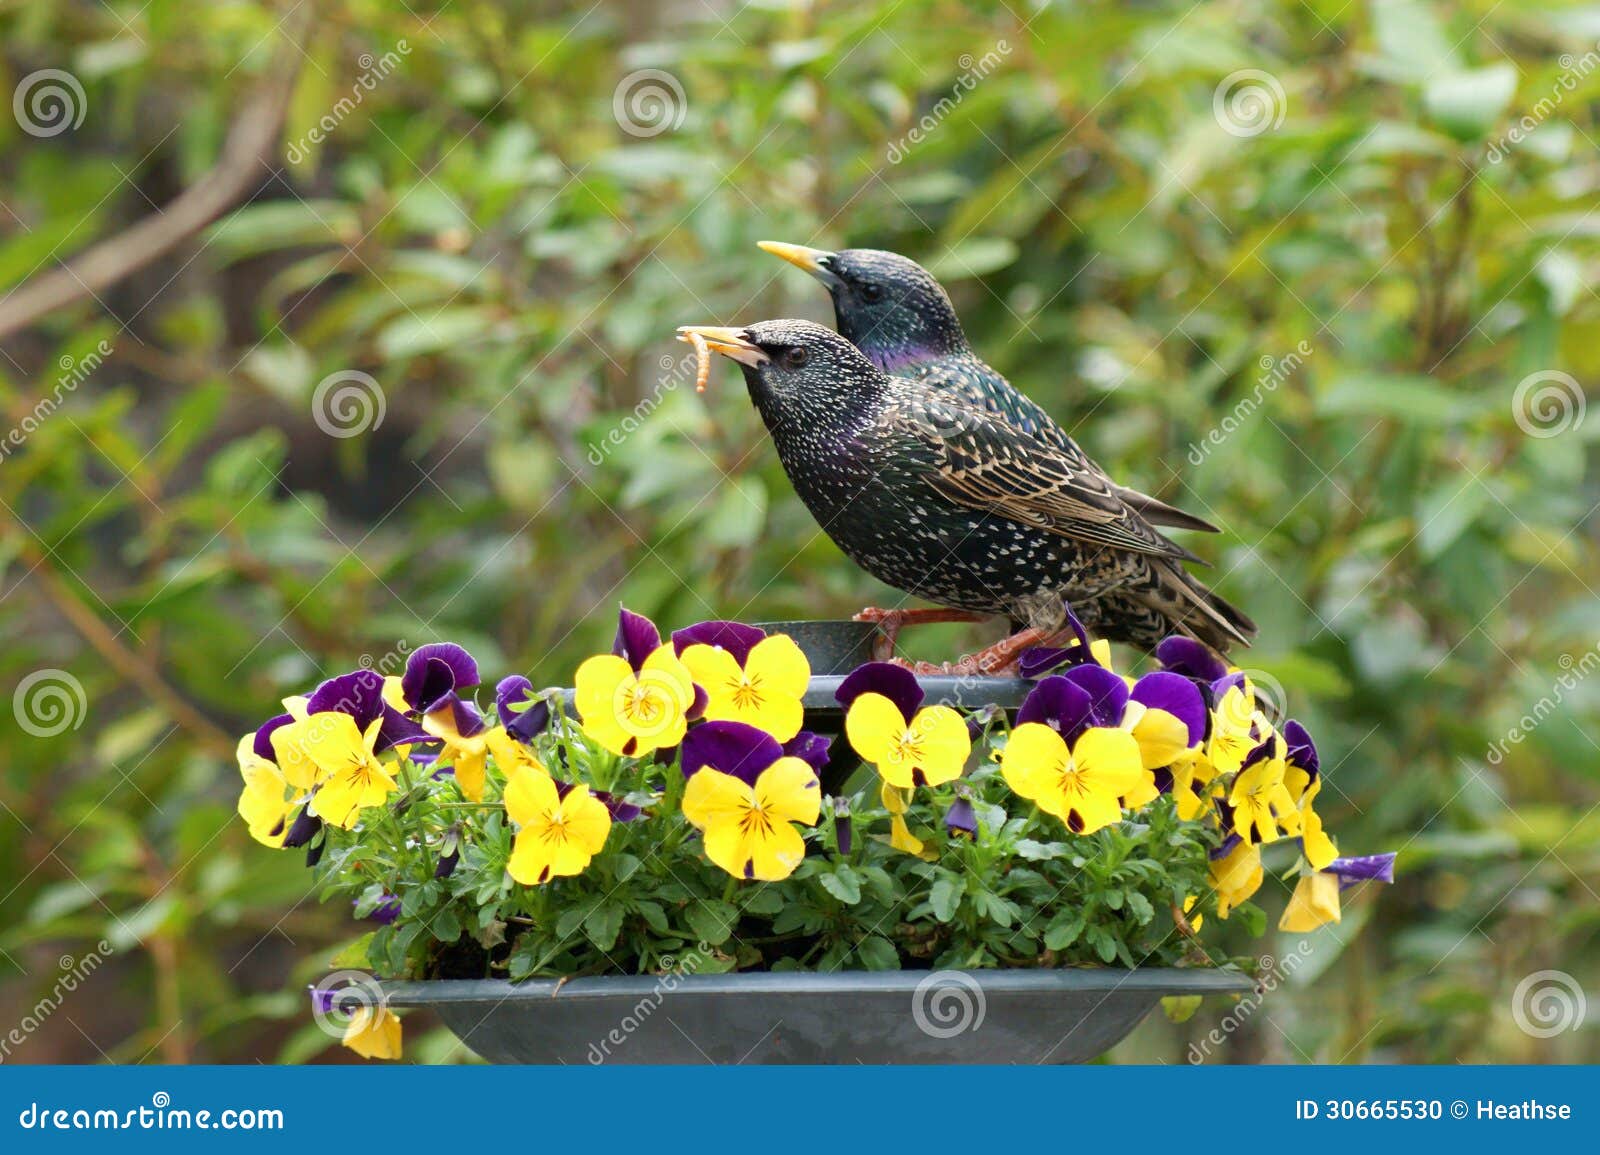 pair of starlings feeding amongst pansies